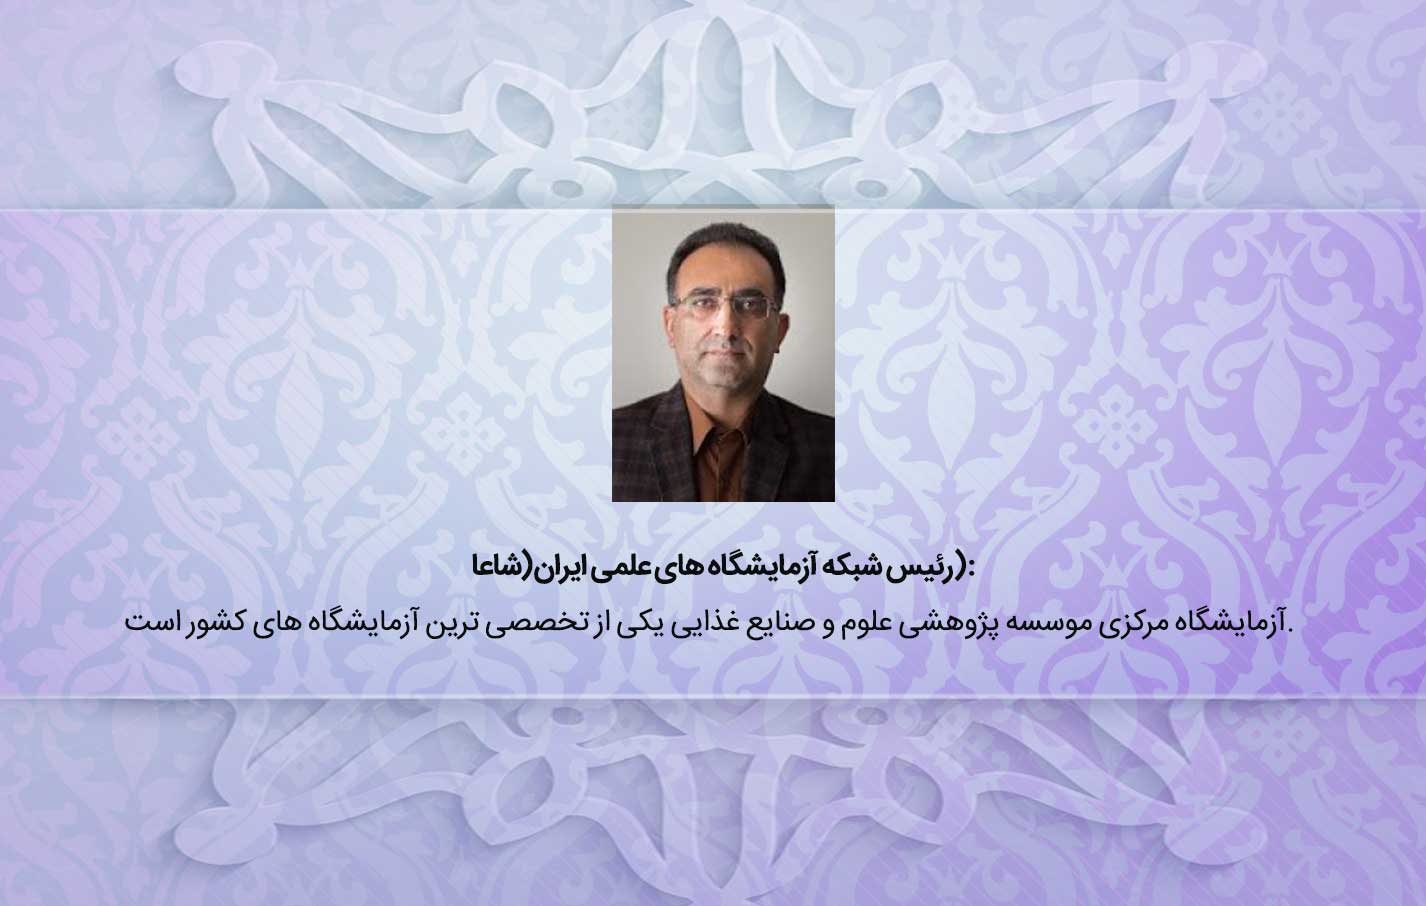 رئیس شبکه آزمایشگاه های علمی ایران(شاعا): آزمایشگاه مرکزی مؤسسه پژوهشی علوم و صنایع غذایی یکی از تخصصی ترین آزمایشگاه های کشور است